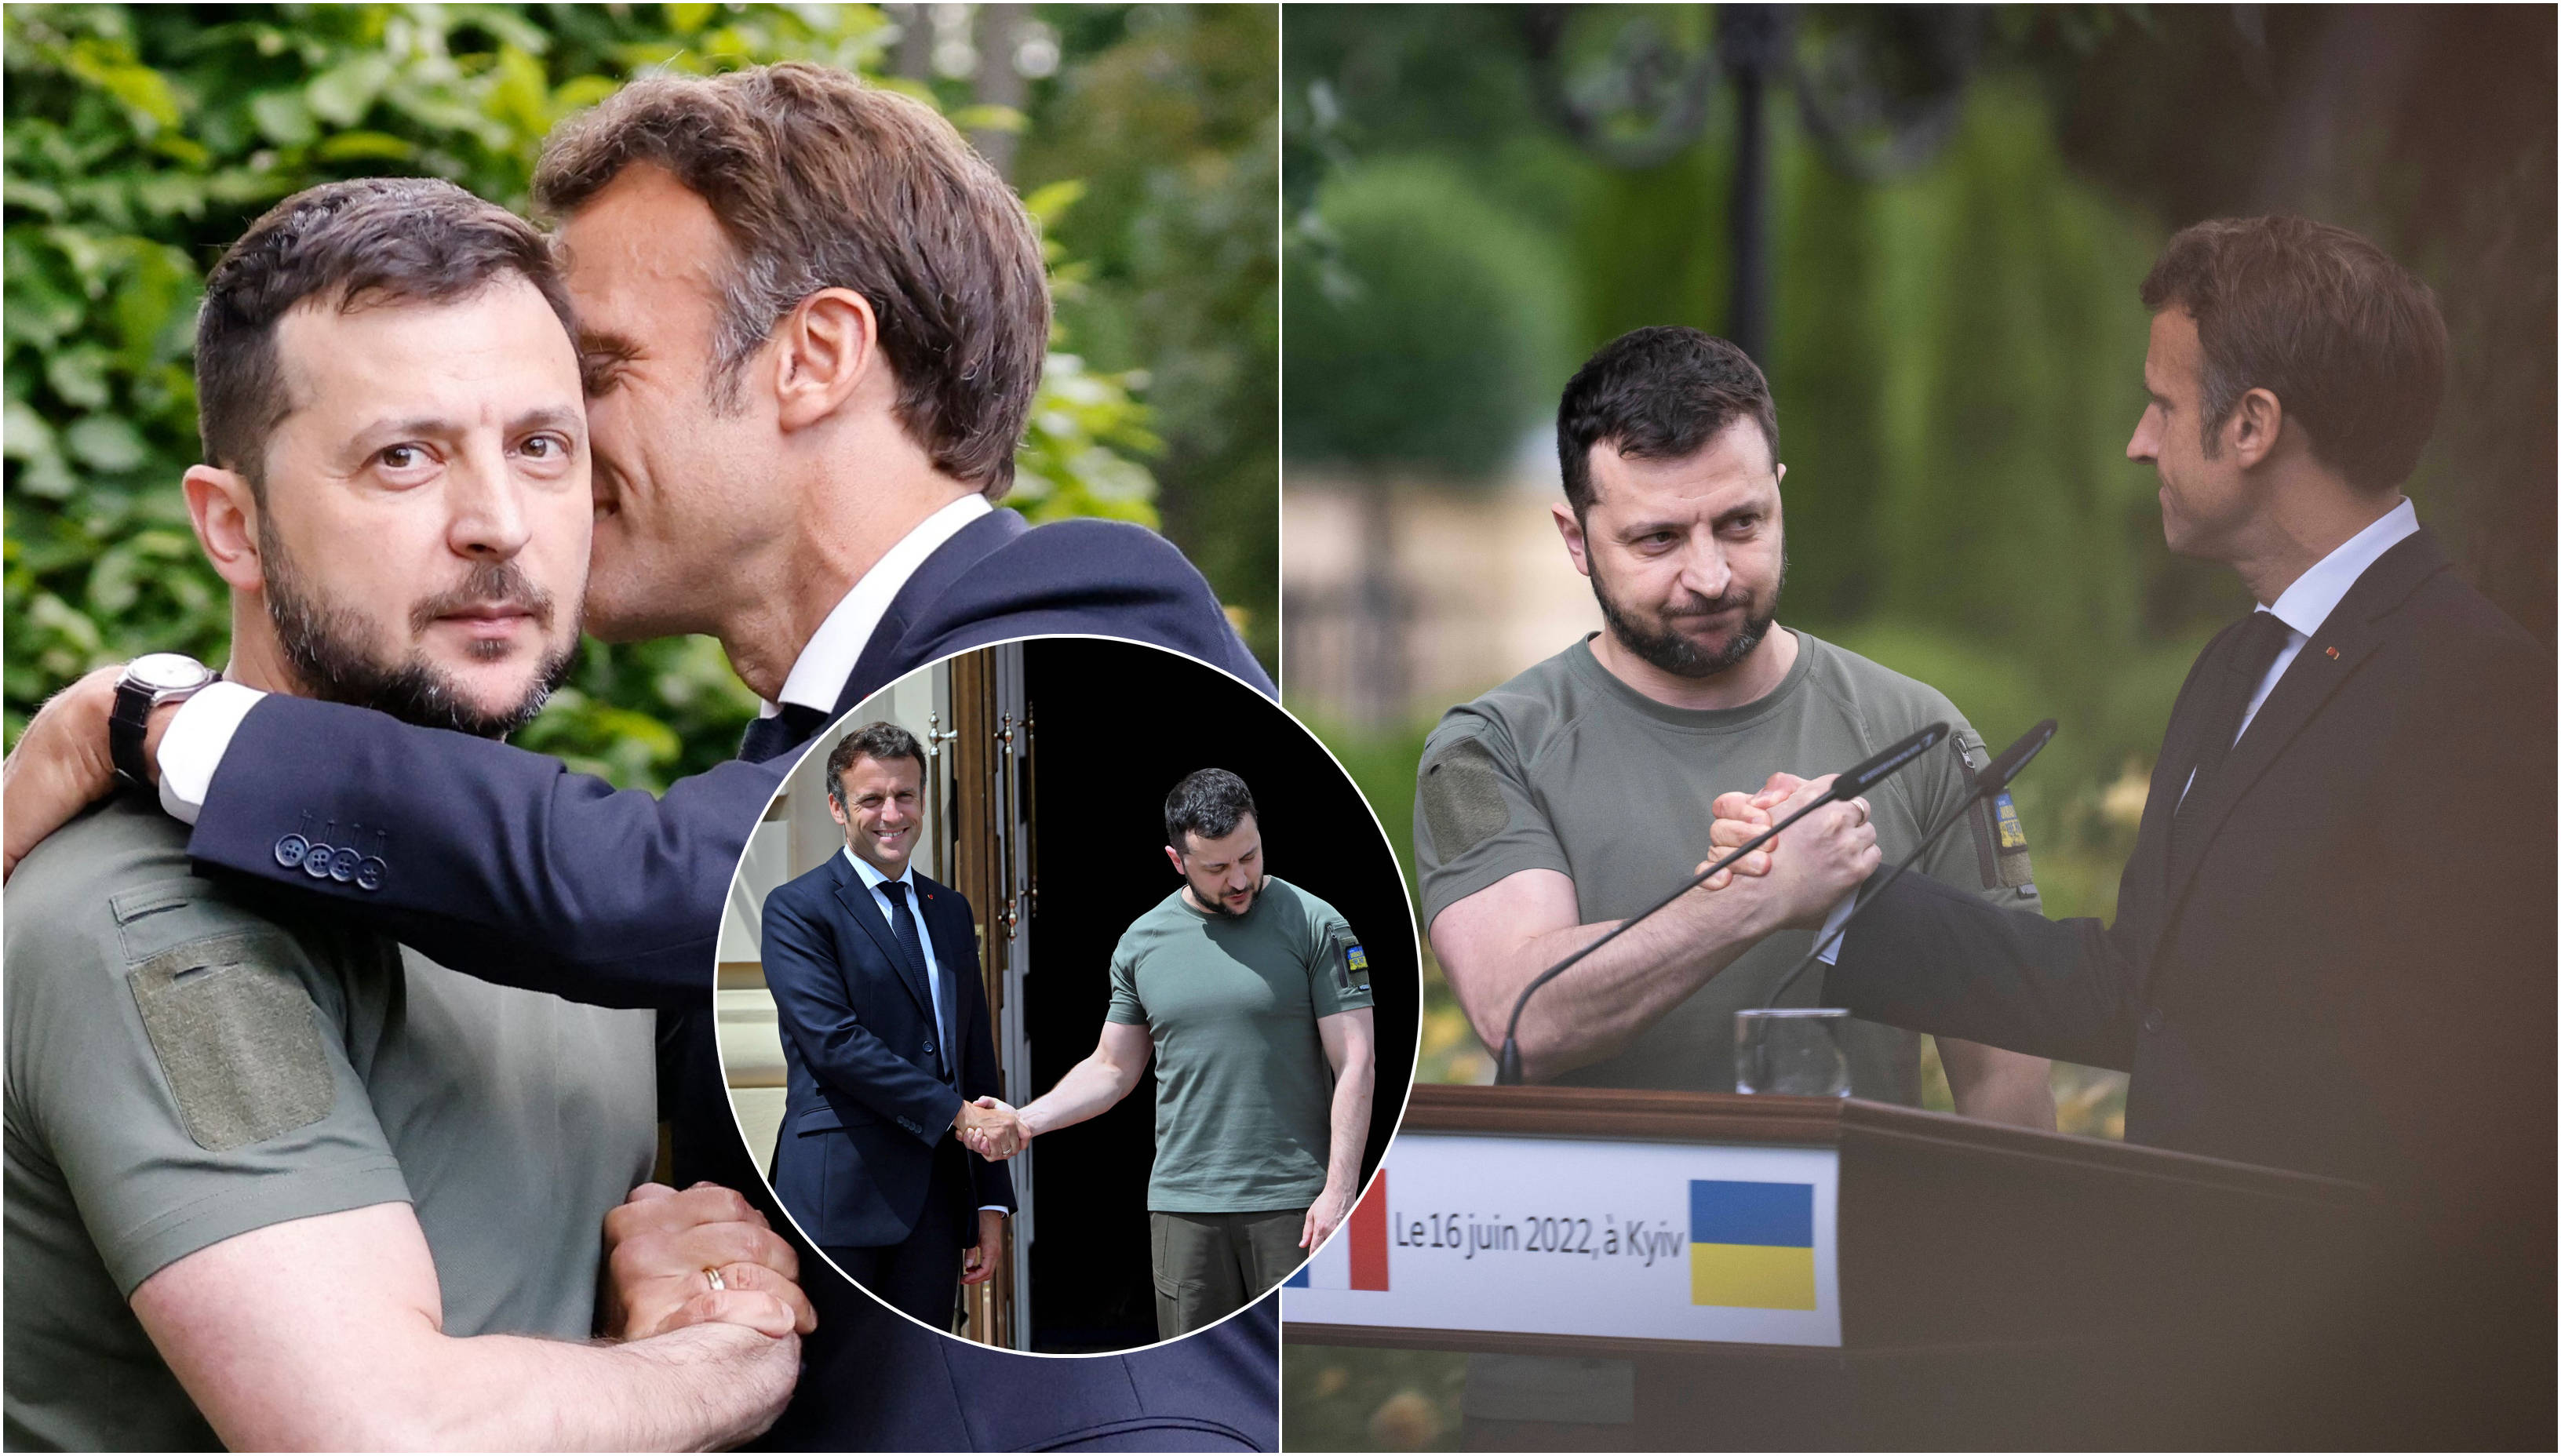 Le foto di V. Zelenskiy con i leader Ue scuotono Internet: i rapporti sono freddi